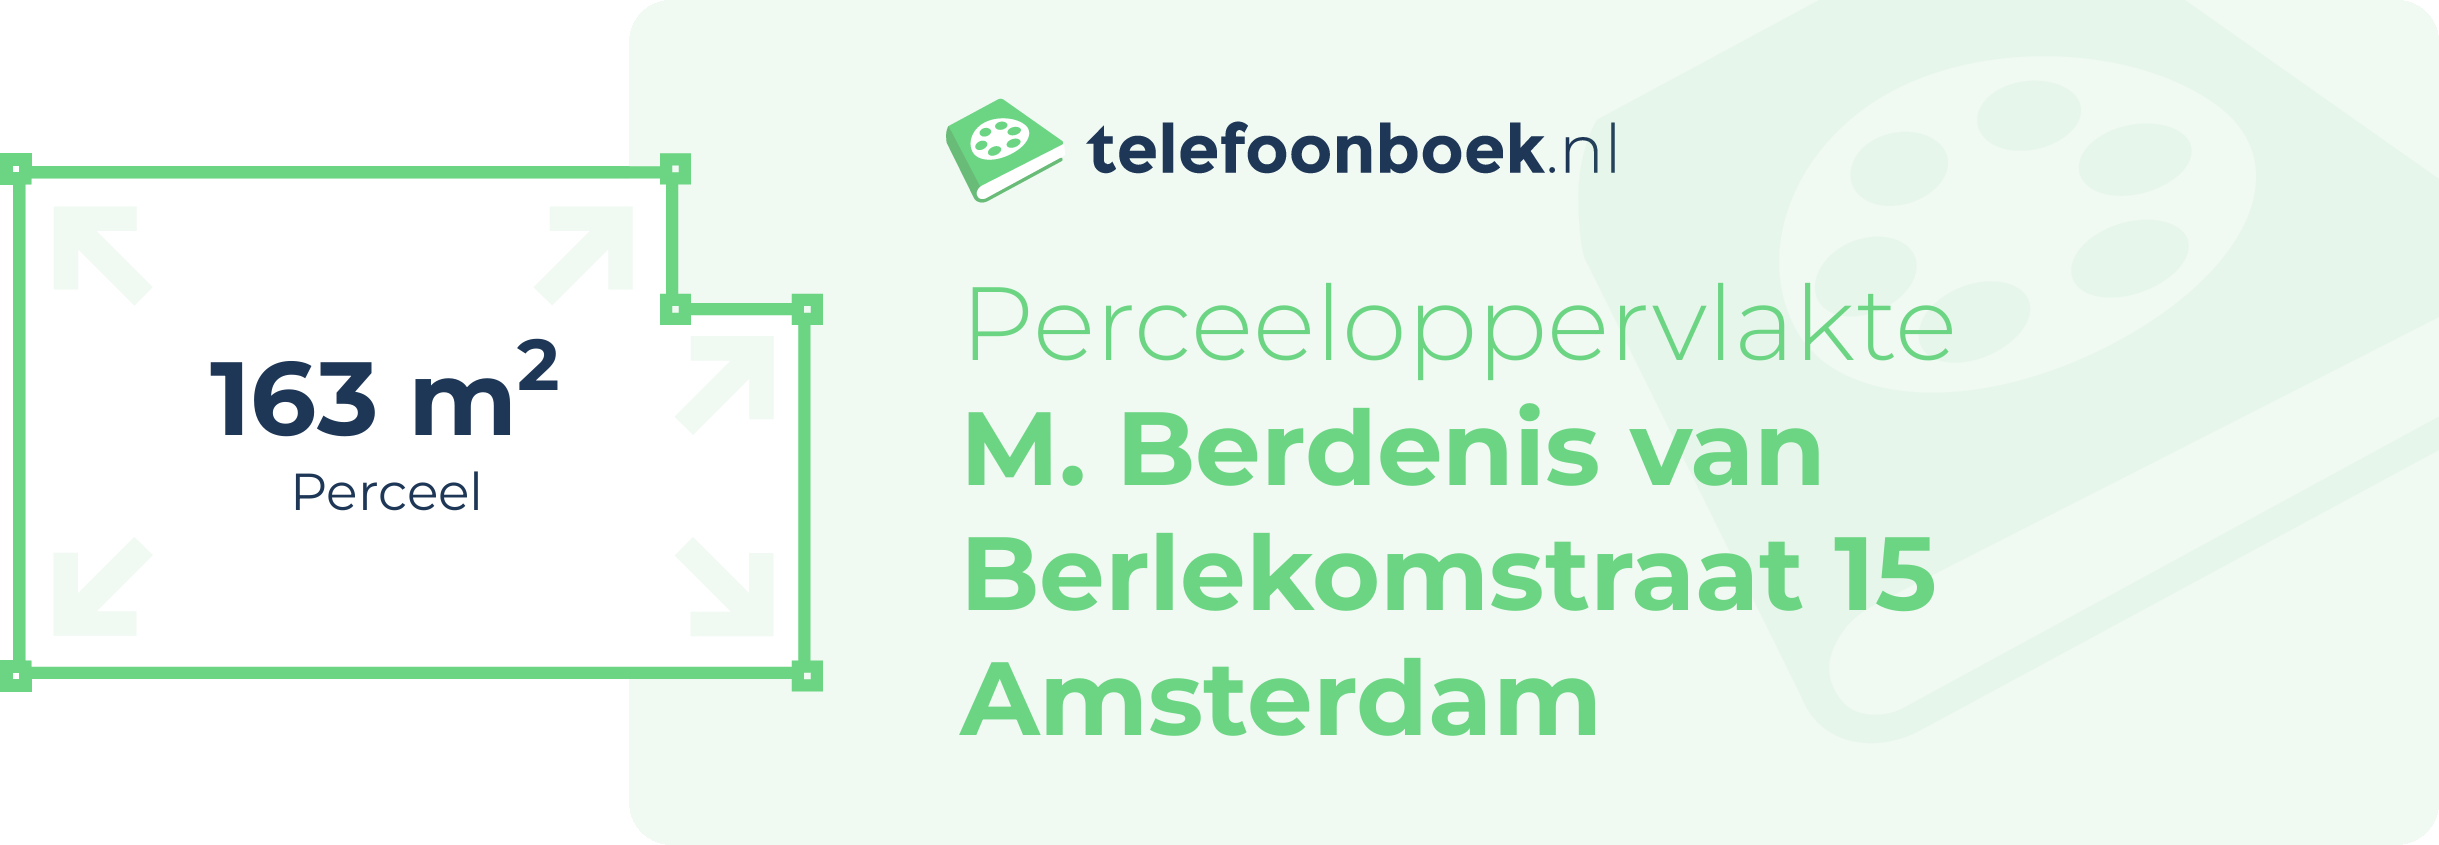 Perceeloppervlakte M. Berdenis Van Berlekomstraat 15 Amsterdam